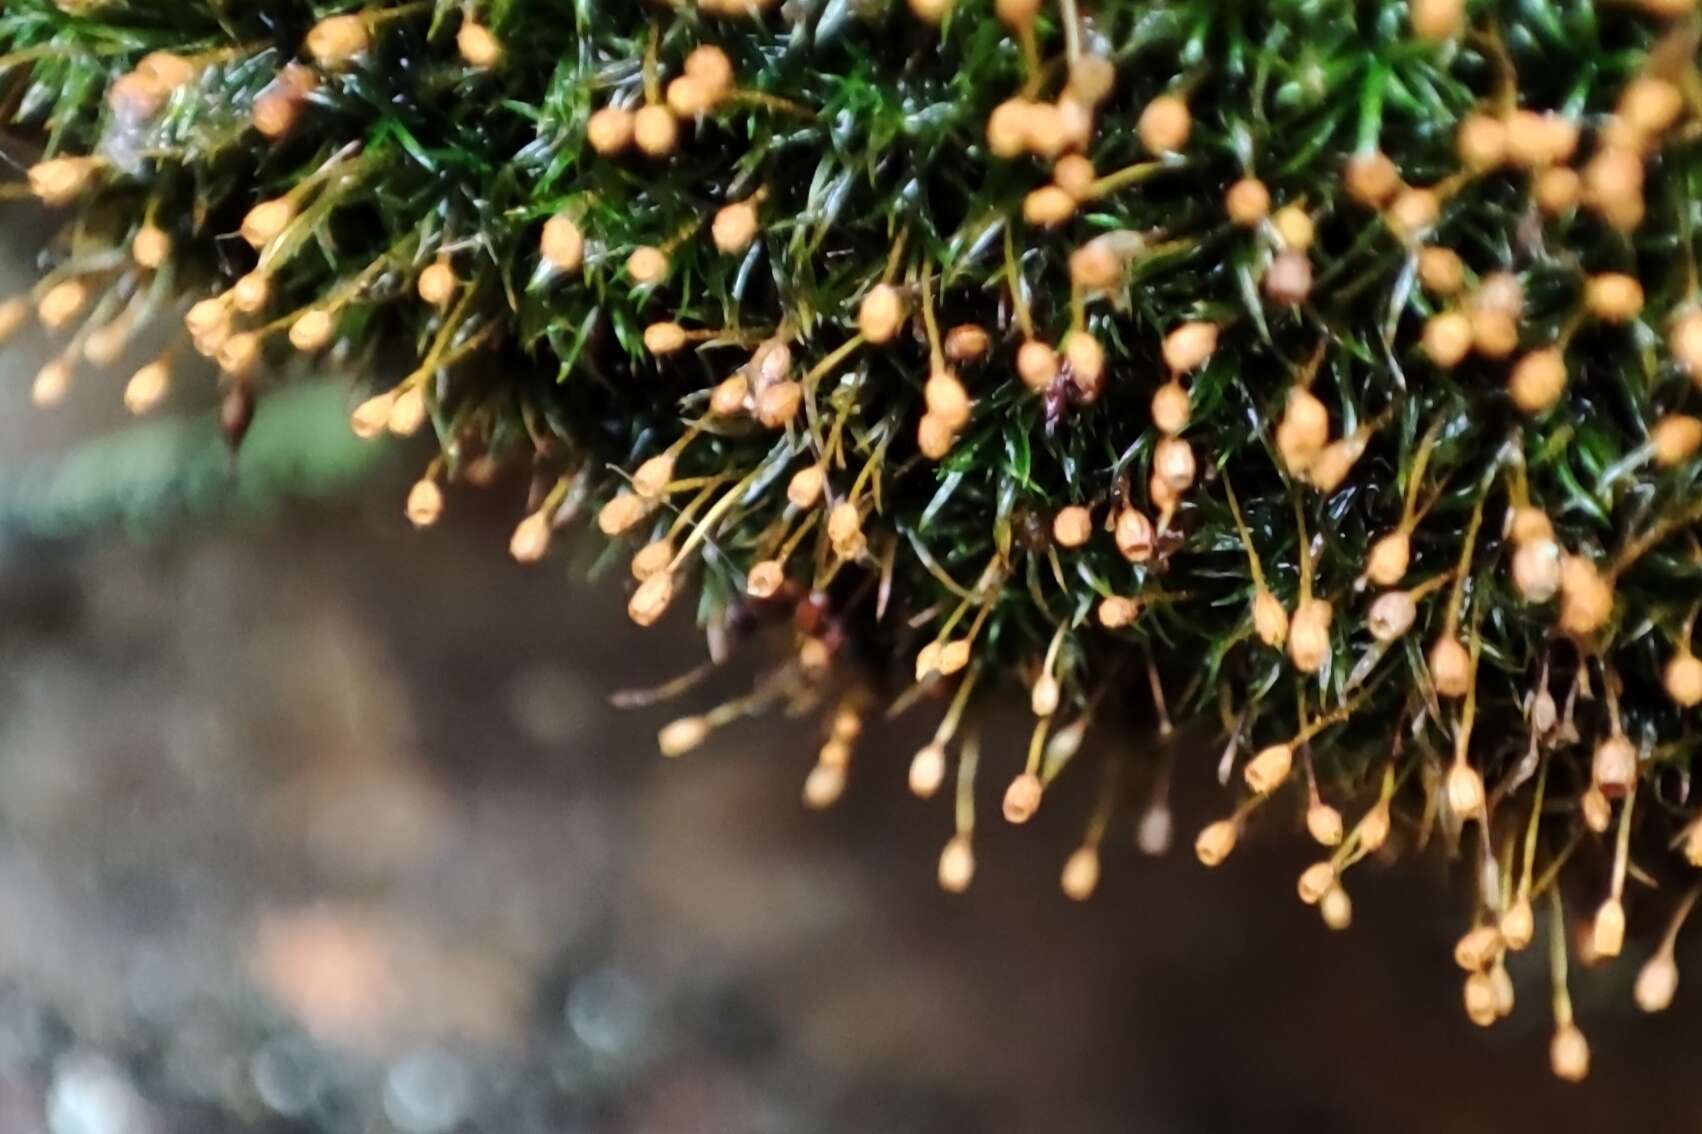 Image of Mougeot's amphidium moss